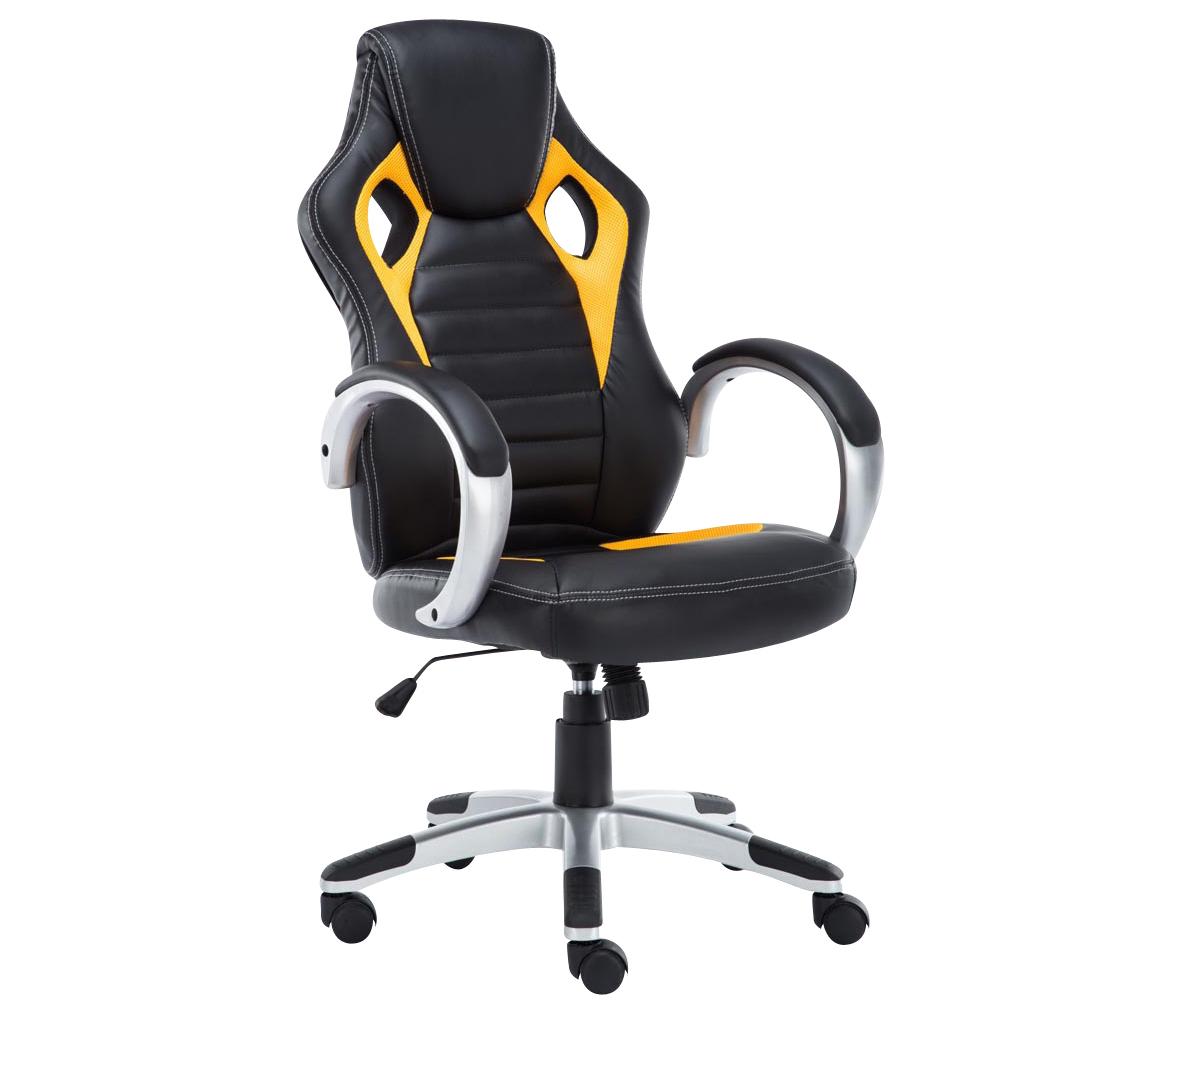 Cadeira Gaming ASCARI PRO, Design Desportivo e Máxima Comodidade, Pele e Pano, em Preto e Amarelo